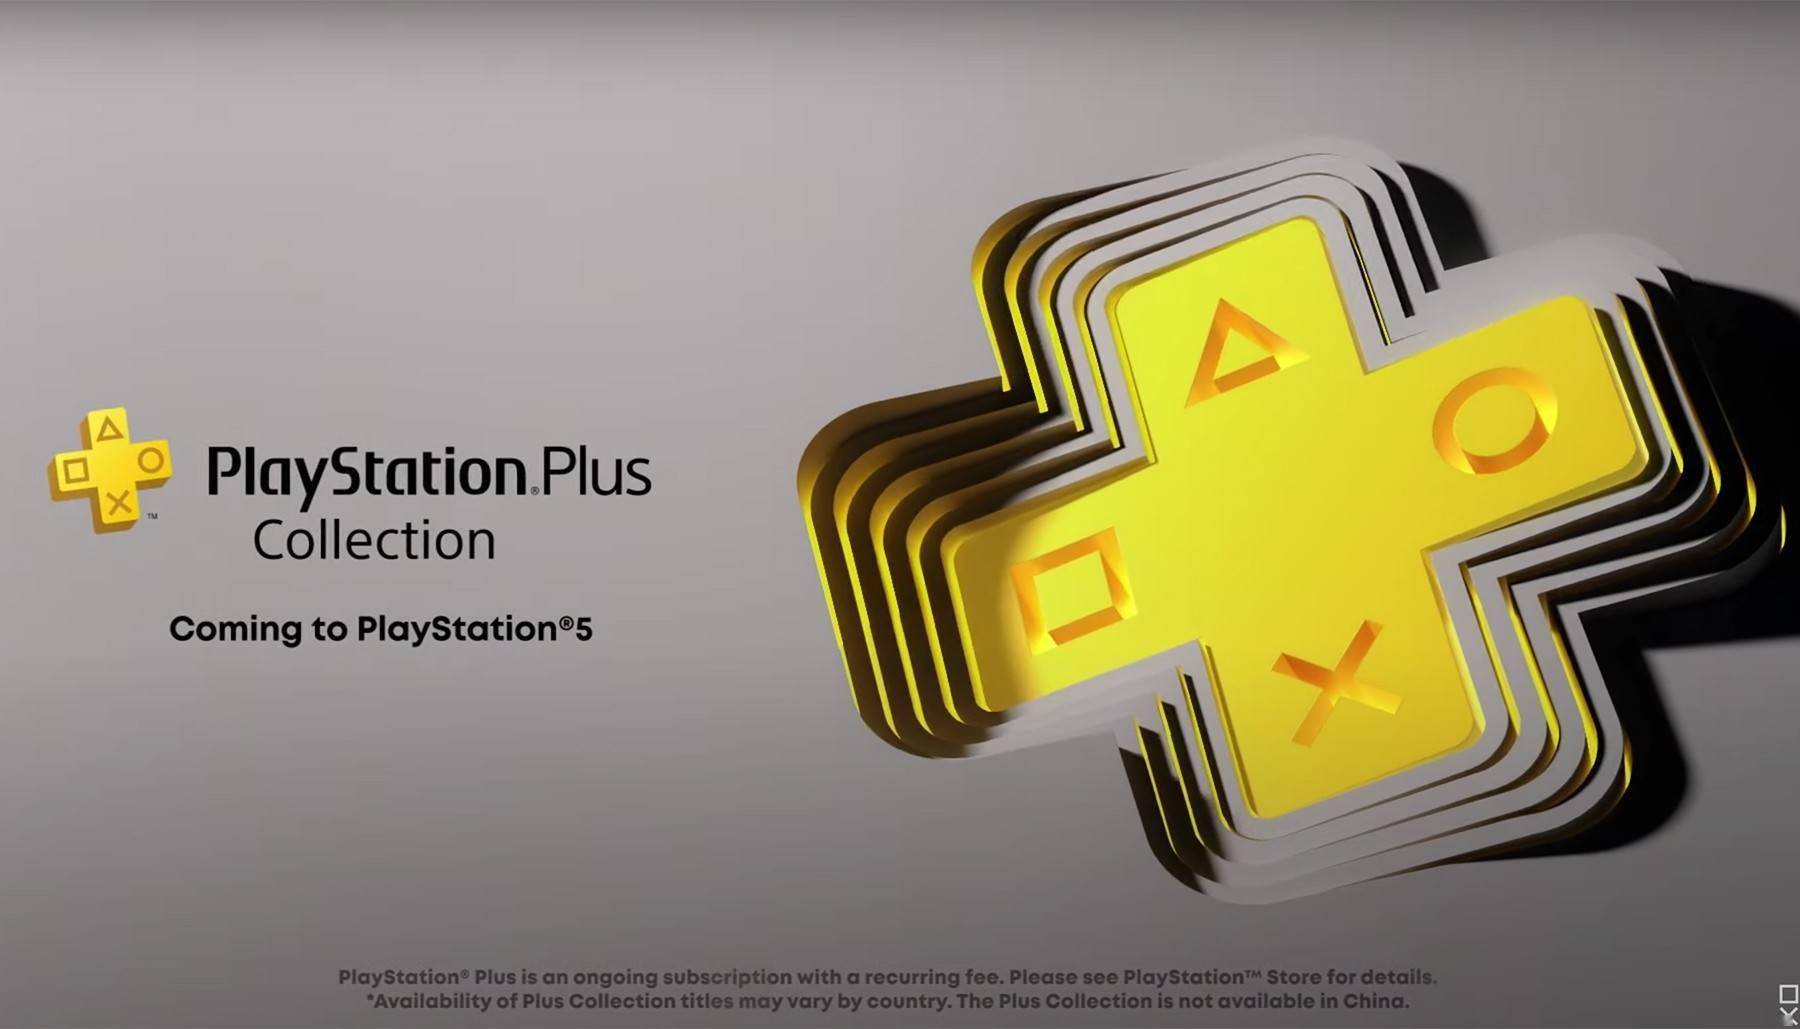 生化危机4苹果版哪里下载:索尼将在5月9日之后停止提供PlayStation Plus合集